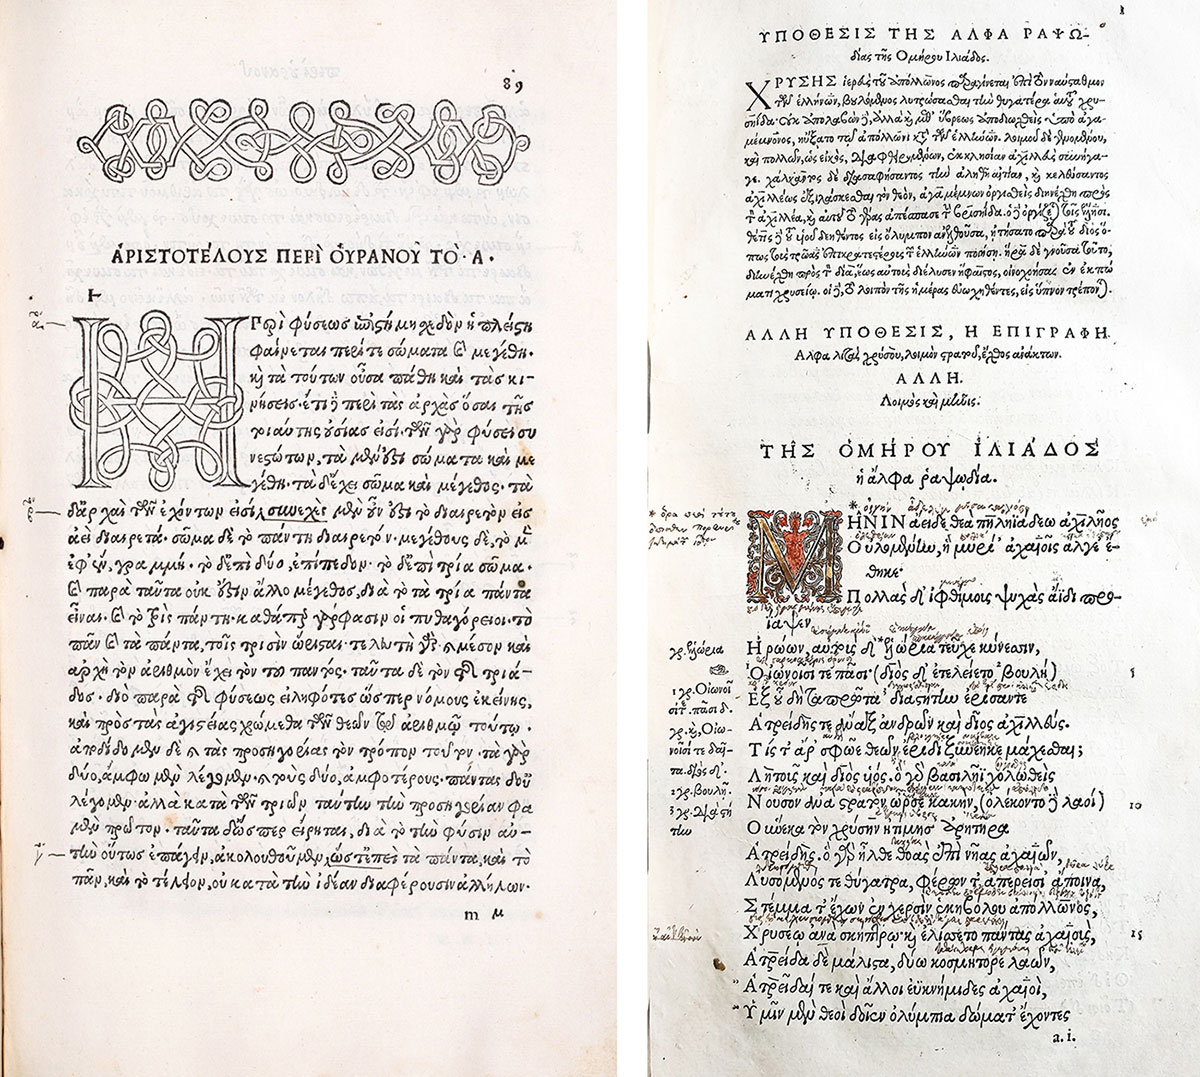 Σελίδες από τον δεύτερο τόμο των Απάντων του Αριστοτέλη, έκδ. Άλδου Μανούτιου, Βενετία, 1497, και από το έργο «Οι της ηρωικής ποιήσεως πρωτεύοντες ποιηταί, και άλλοι τινές», εκδ. Ερρίκου Στέφανου, Γενεύη, 1566. Πηγή εικόνας: Μουσείο Παύλου και Αλεξάνδρας Κανελλοπούλου.